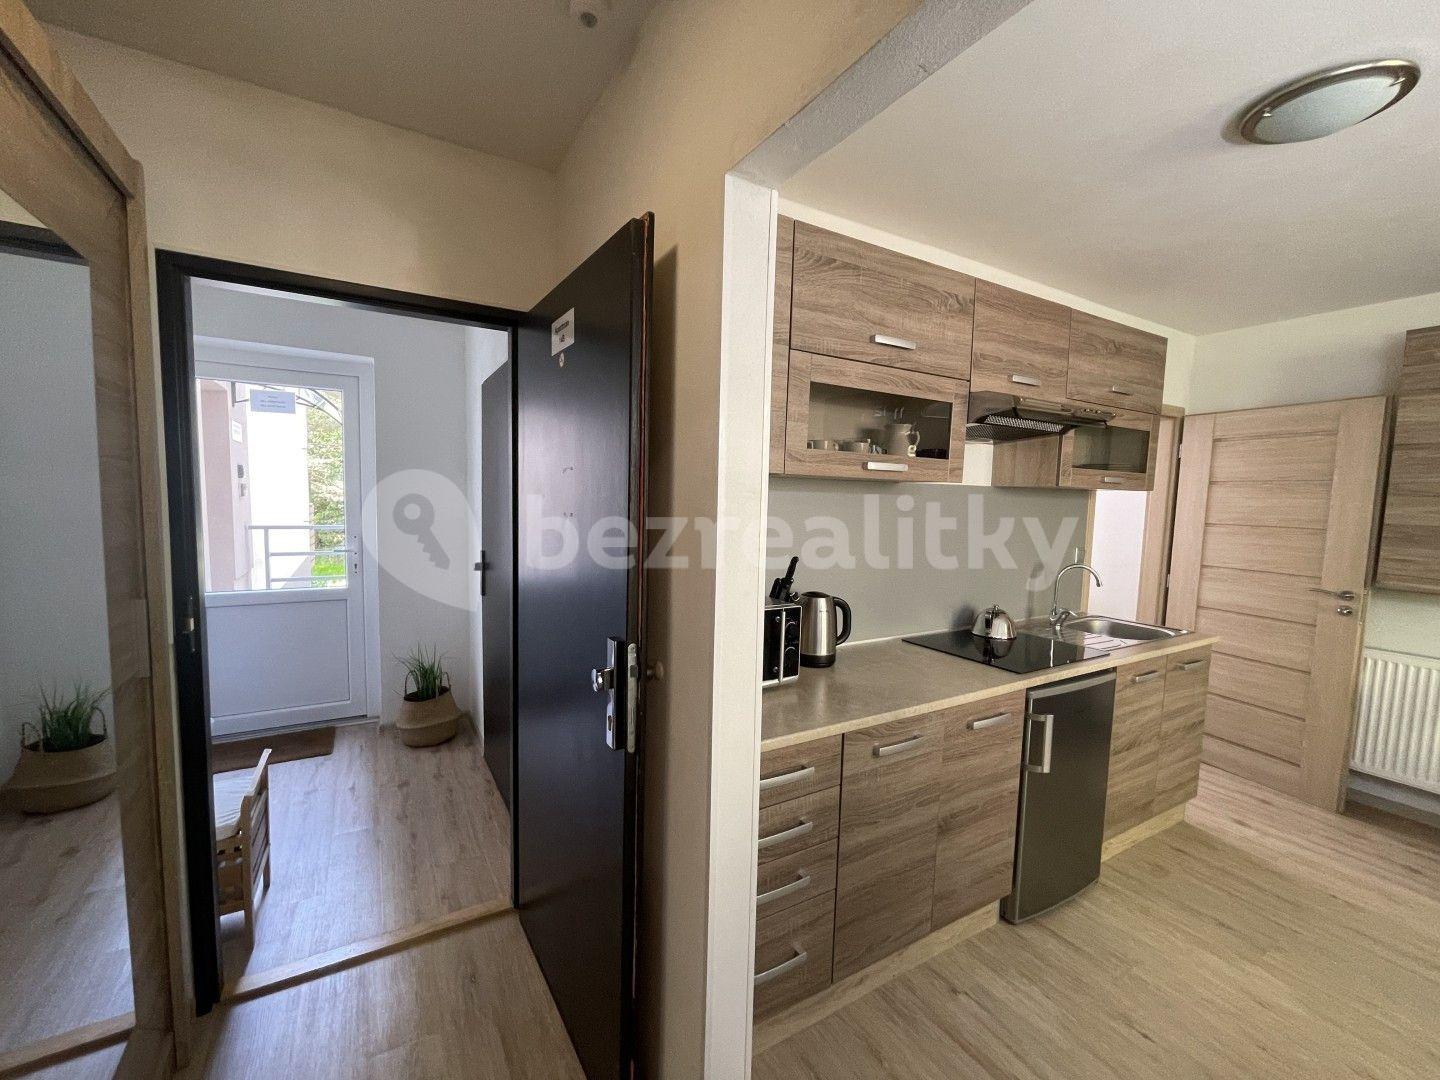 1 bedroom with open-plan kitchen flat for sale, 32 m², Všemina, Zlínský Region